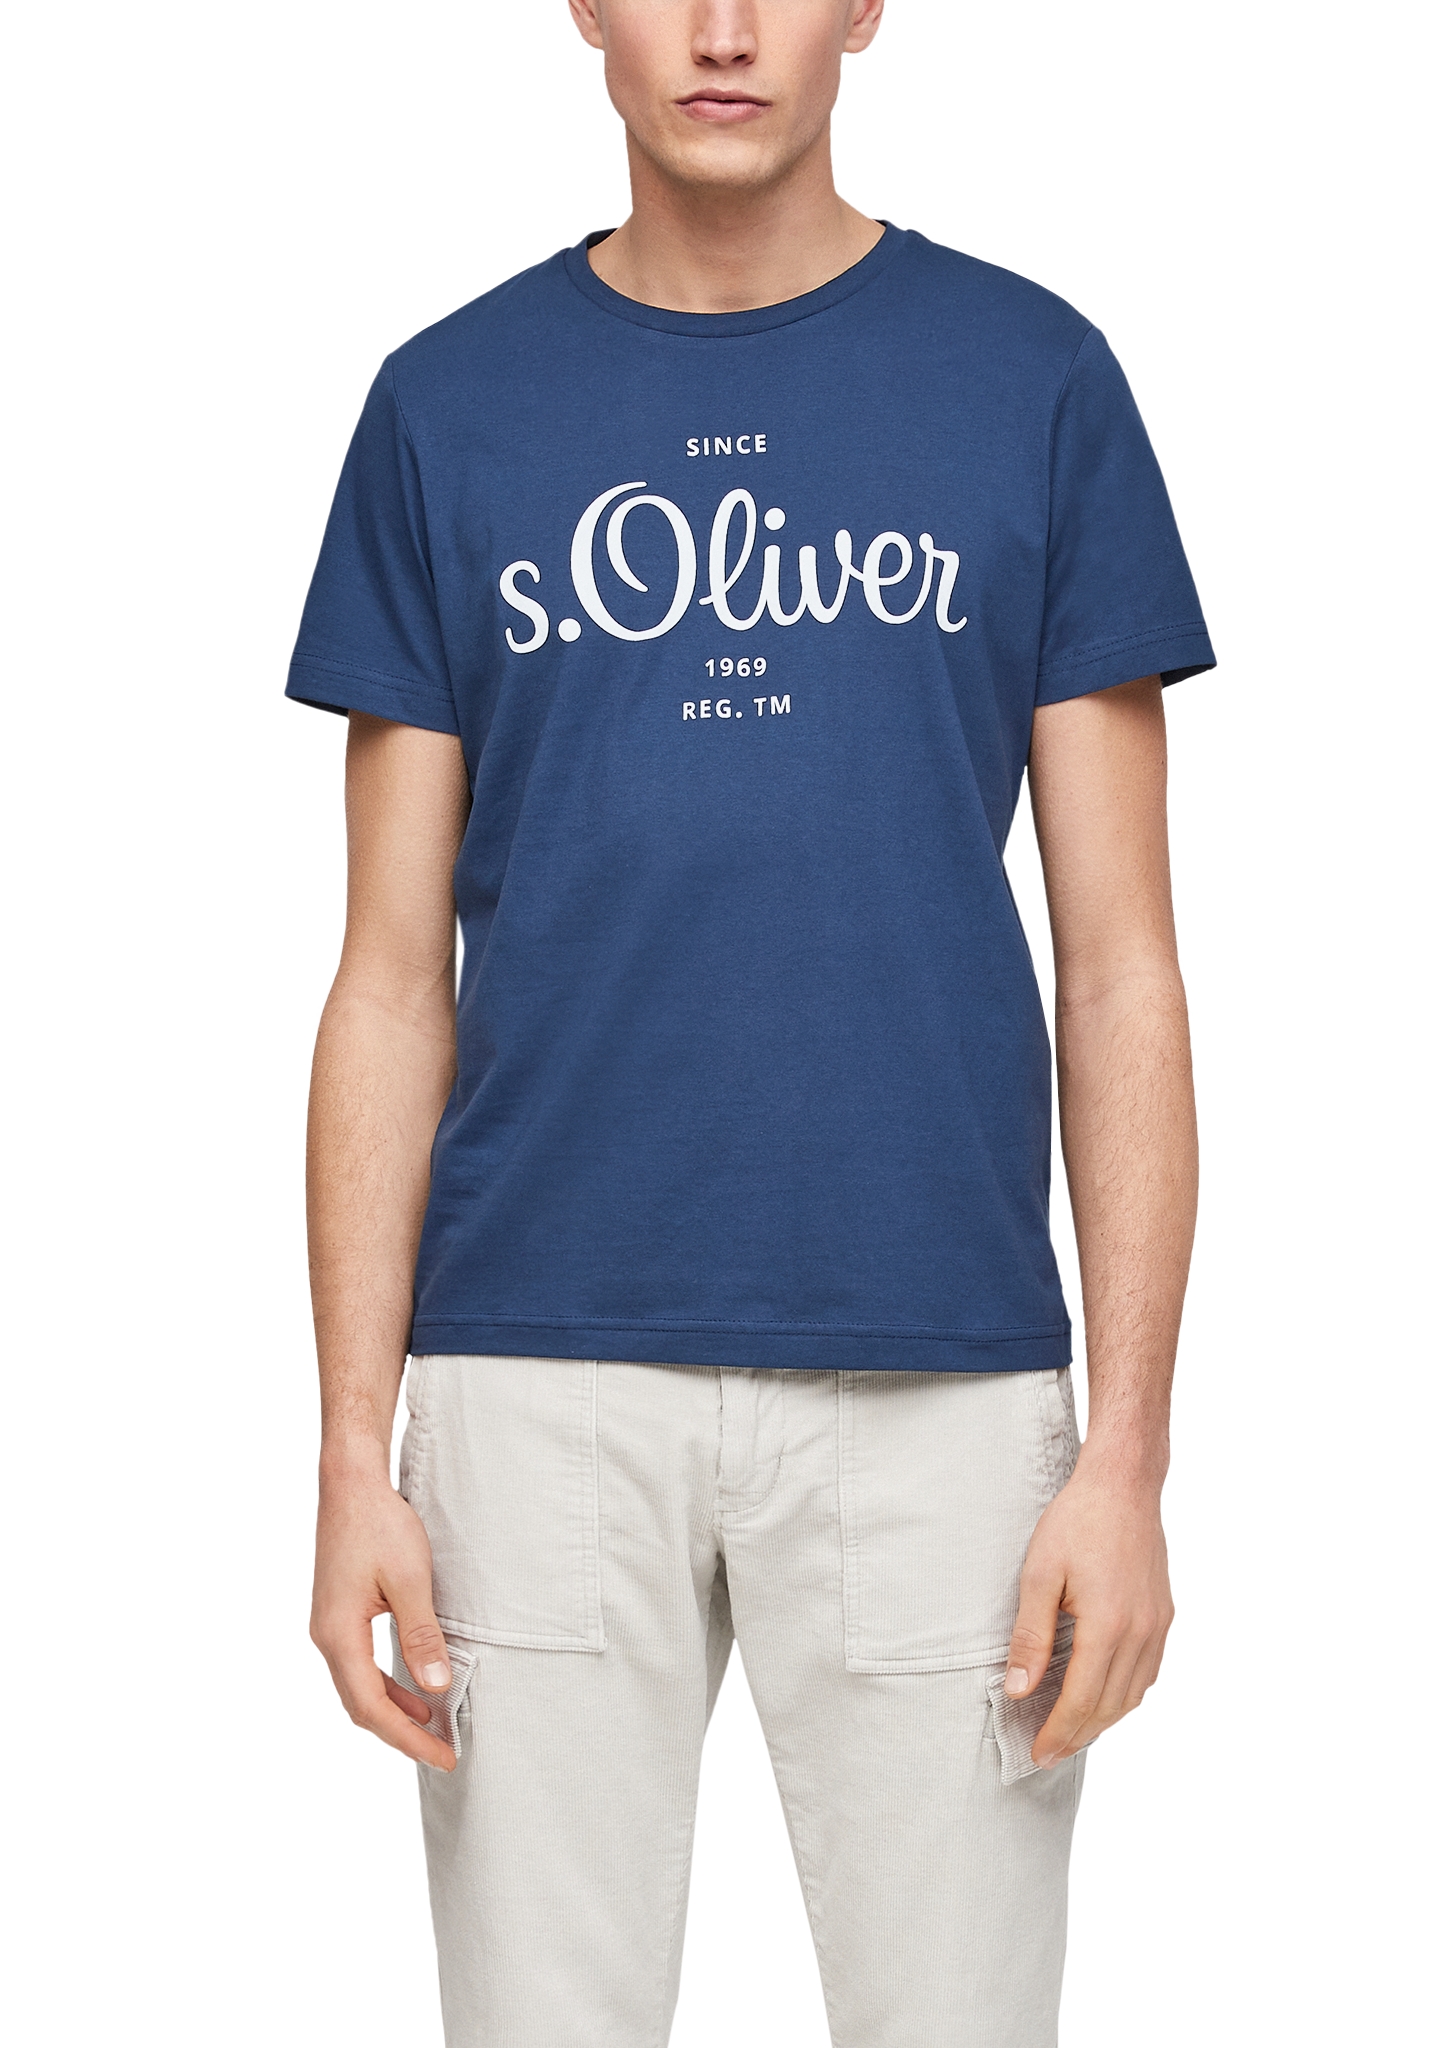 s.Oliver pánské triko s krátkým rukávem 03.899.32.6954/5693 Modrá M